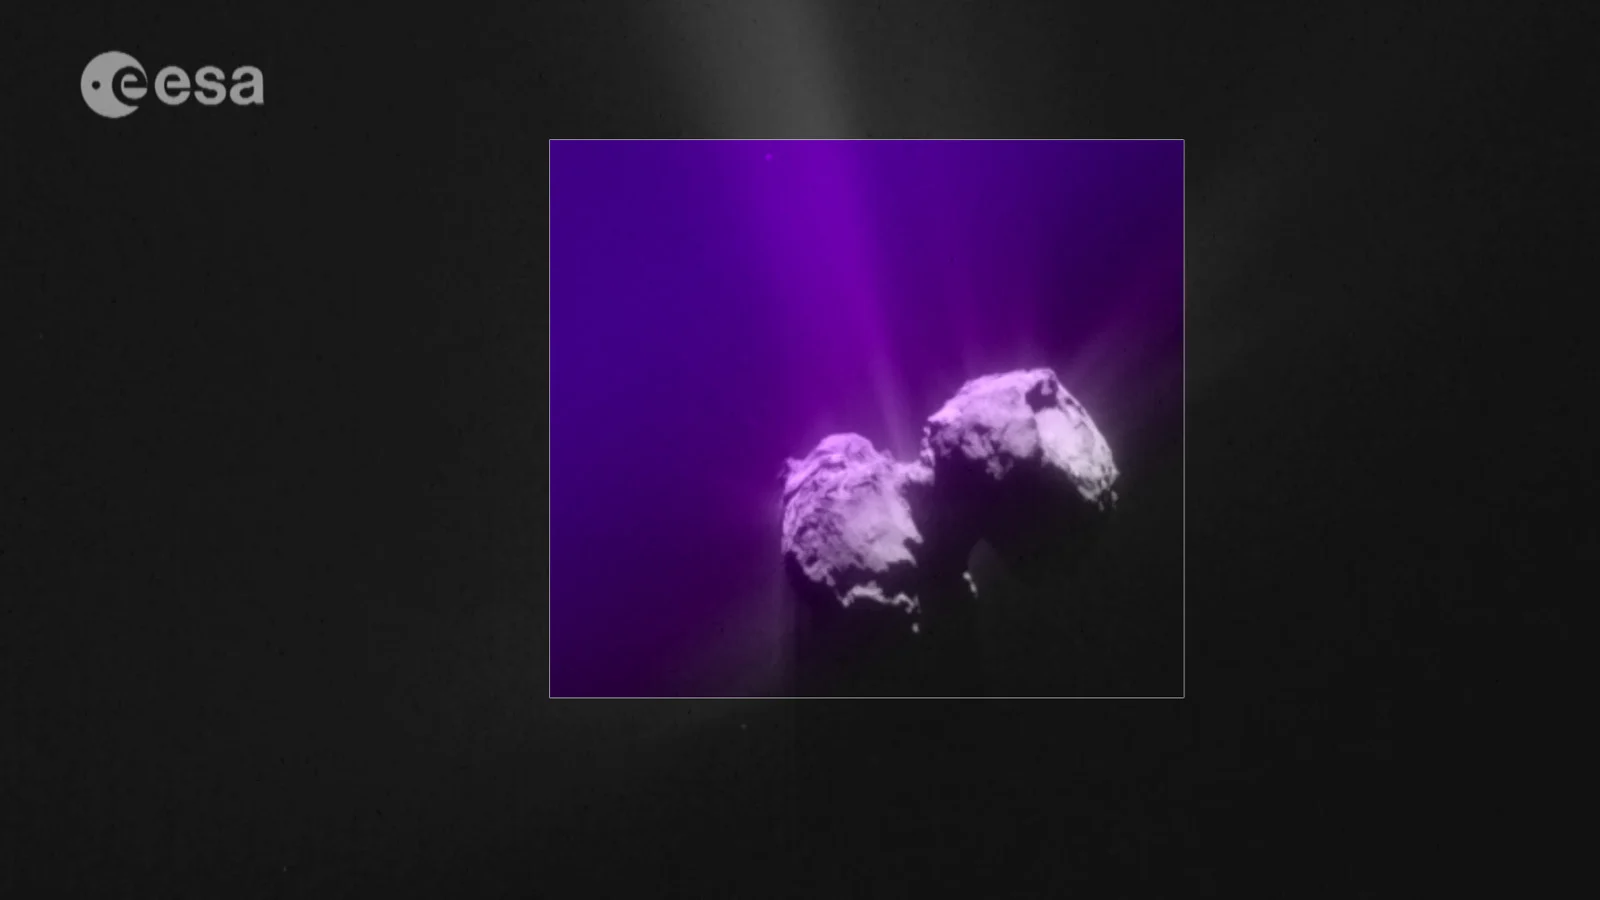 Unique ultraviolet auroras discovered around Rosetta comet